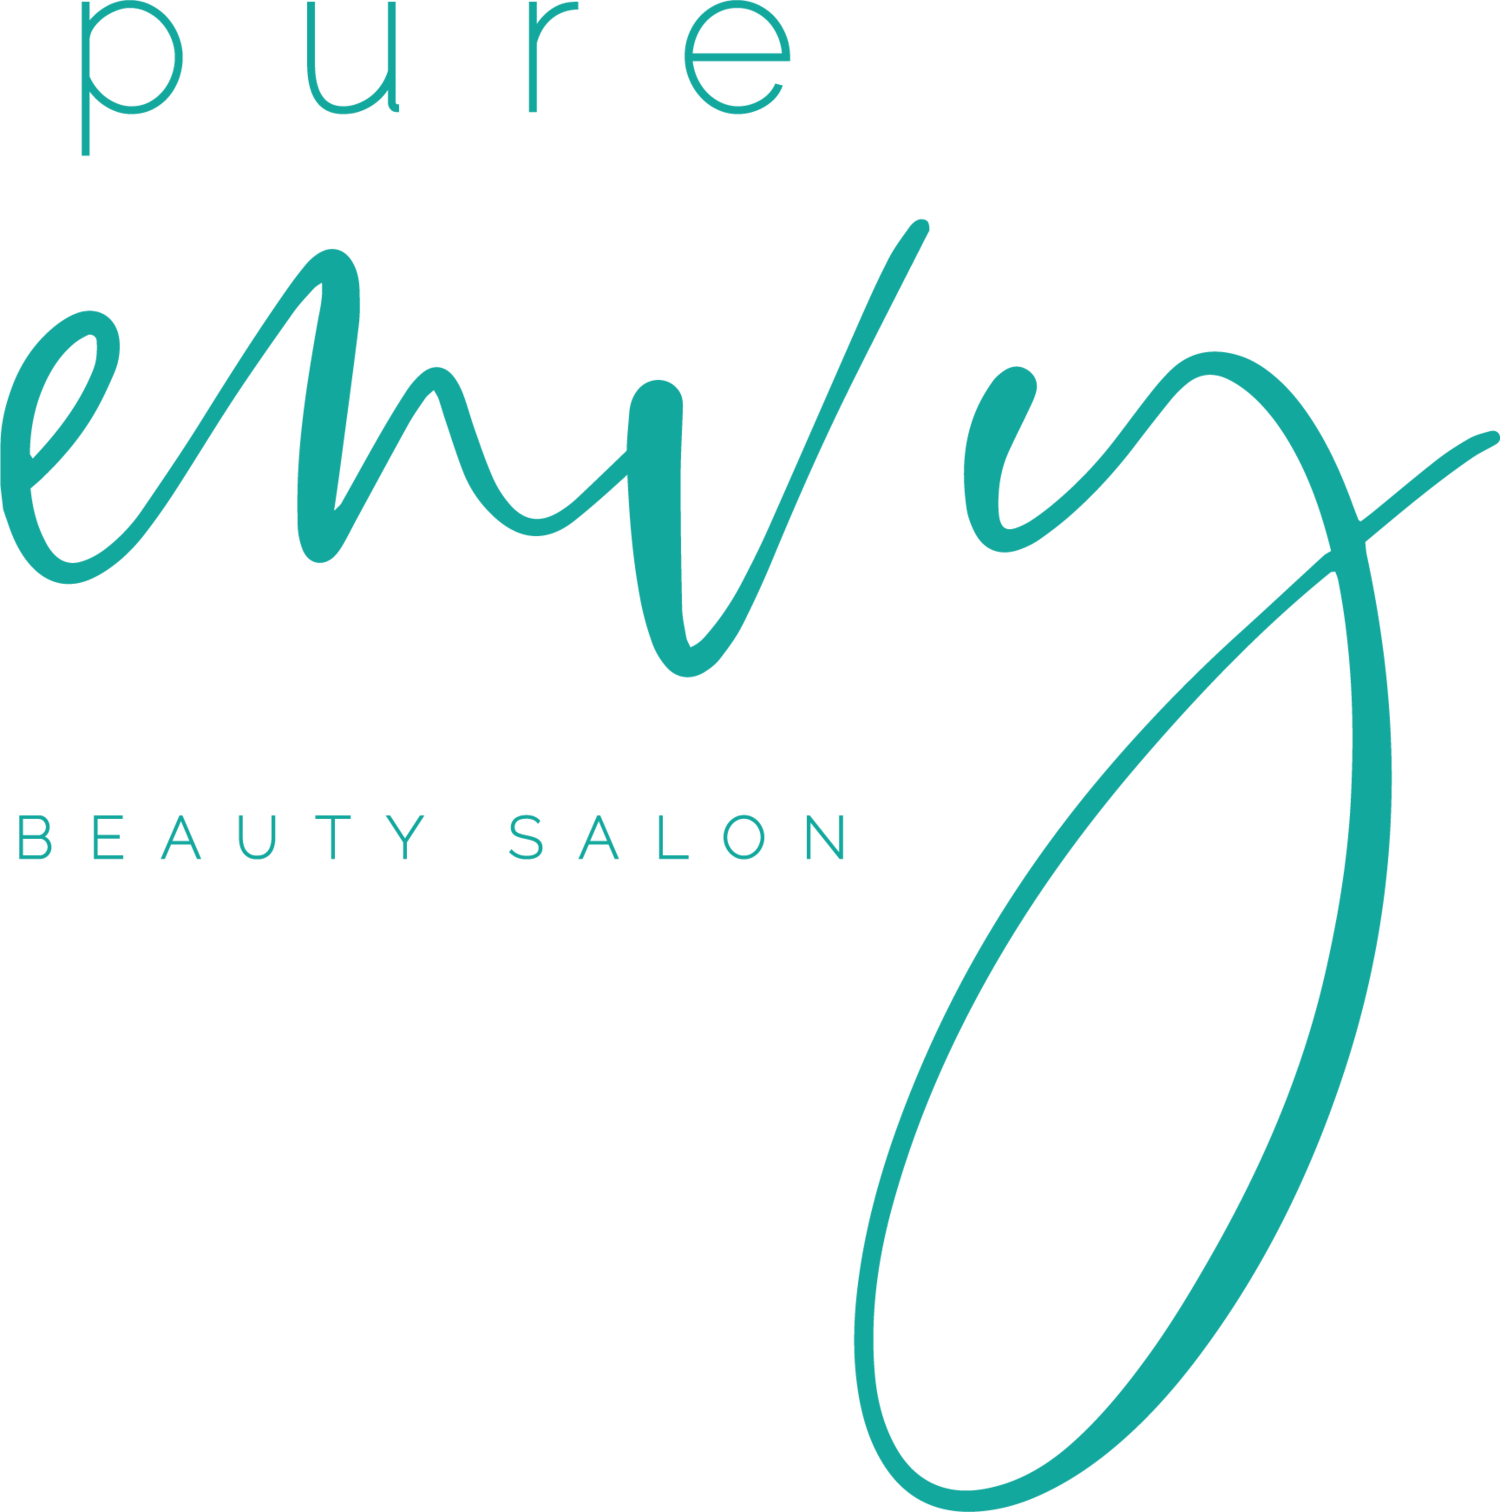 Pure Envy Beauty Salon